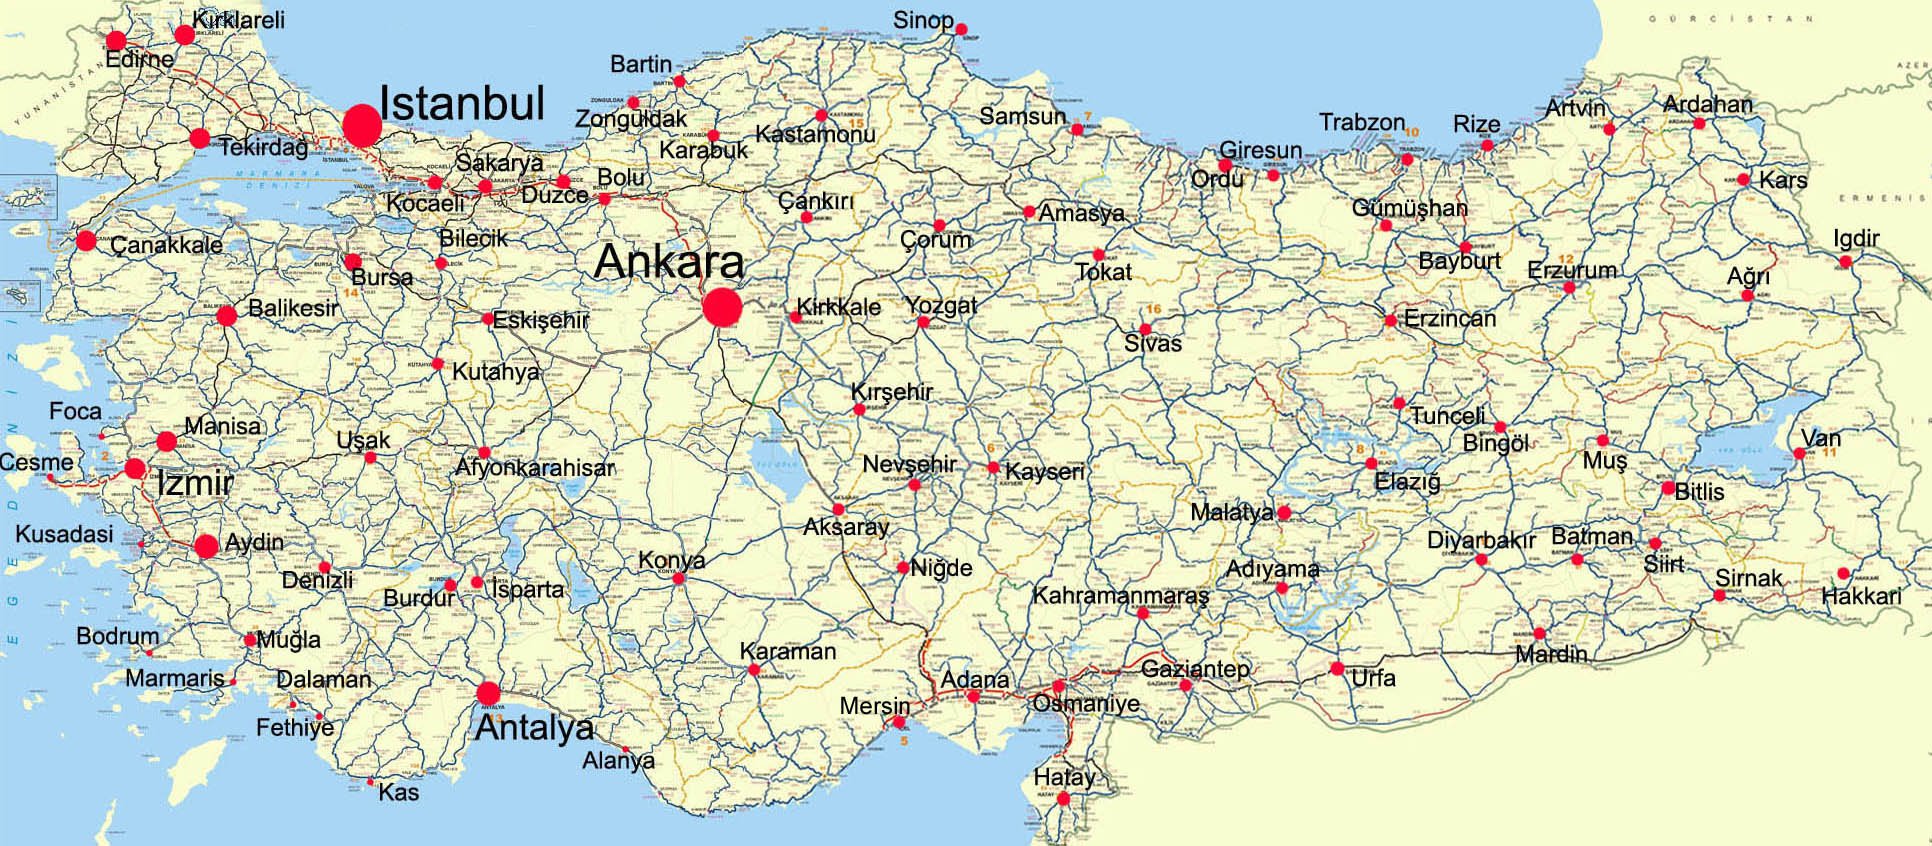 Карты Турции. Подробная карта Турции на русском языке с курортами и отелями